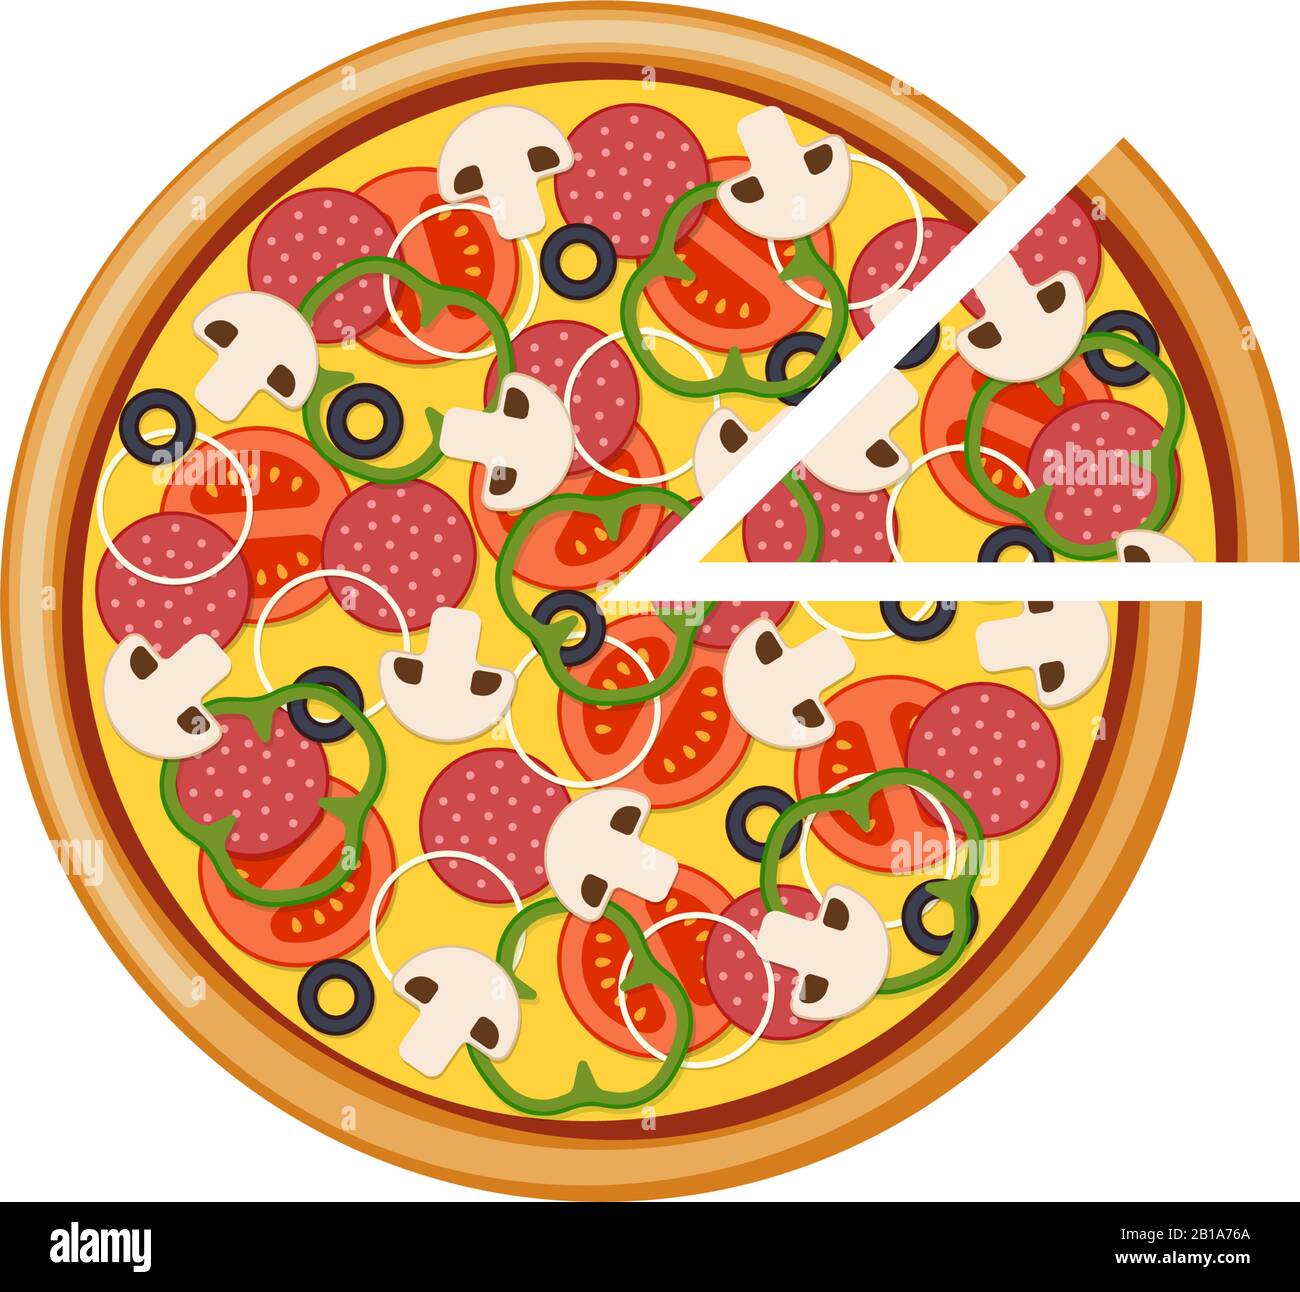 Pizza mit Tomaten in Scheiben Champignons Salamiwurst Zwiebelpfeffer schwarze Oliven und Käse. EPS-Illustration für isolierte italienische Fast-Food-Vektoren Stock Vektor